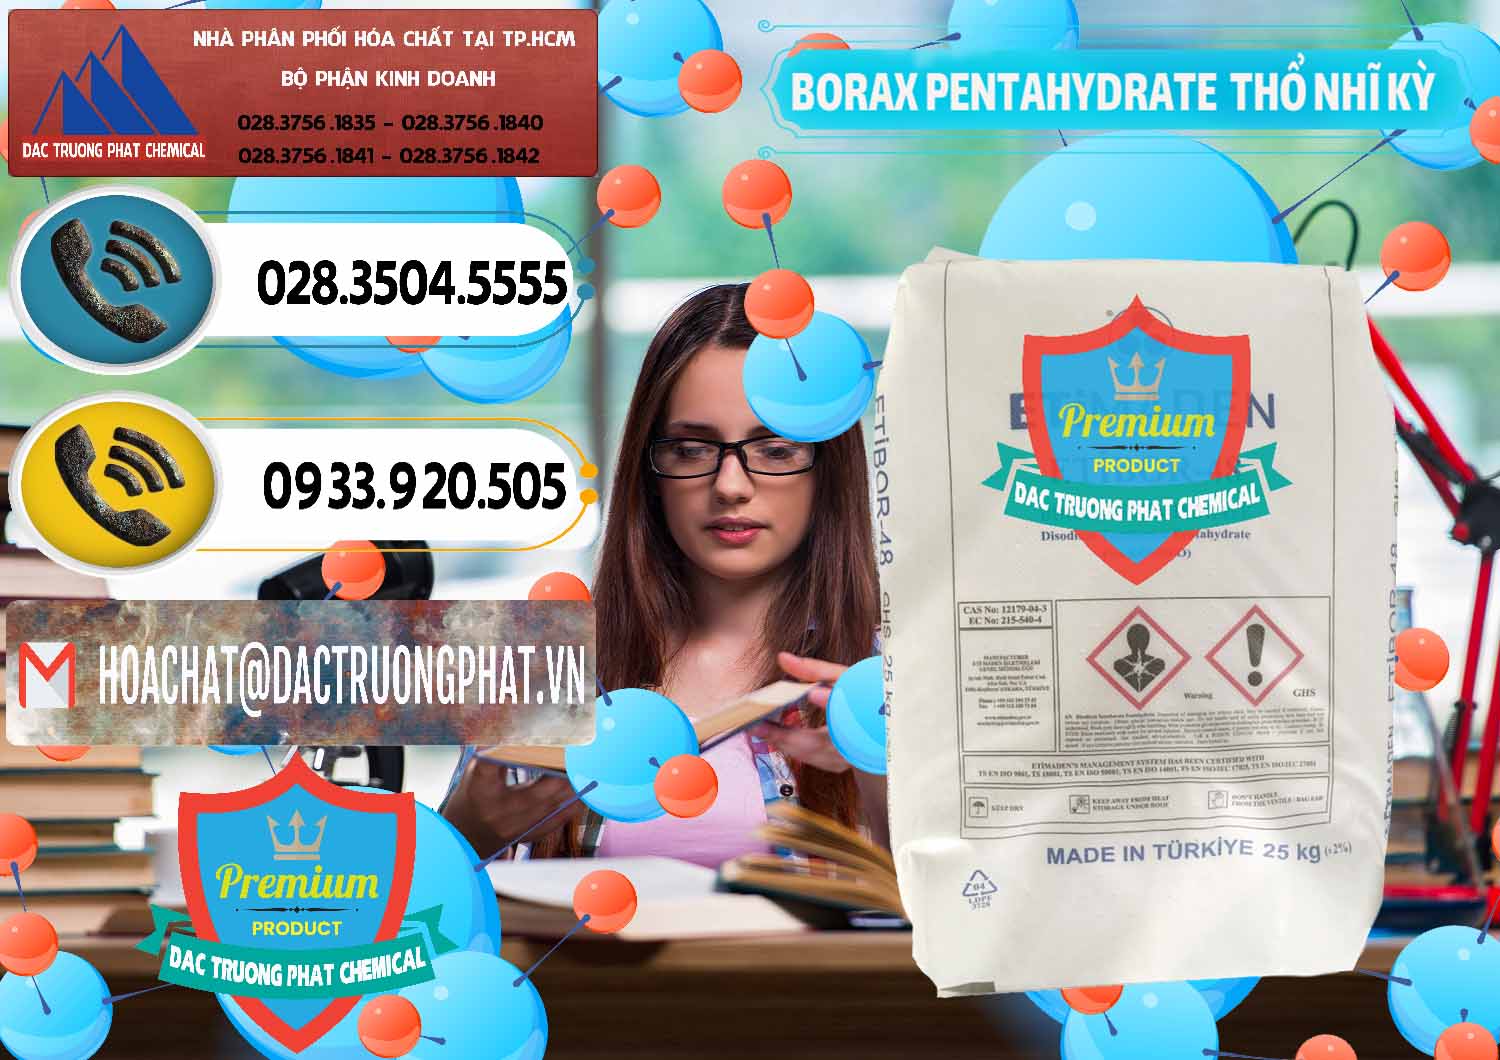 Chuyên bán và phân phối Borax Pentahydrate Thổ Nhĩ Kỳ Turkey - 0431 - Đơn vị kinh doanh và cung cấp hóa chất tại TP.HCM - hoachatdetnhuom.vn